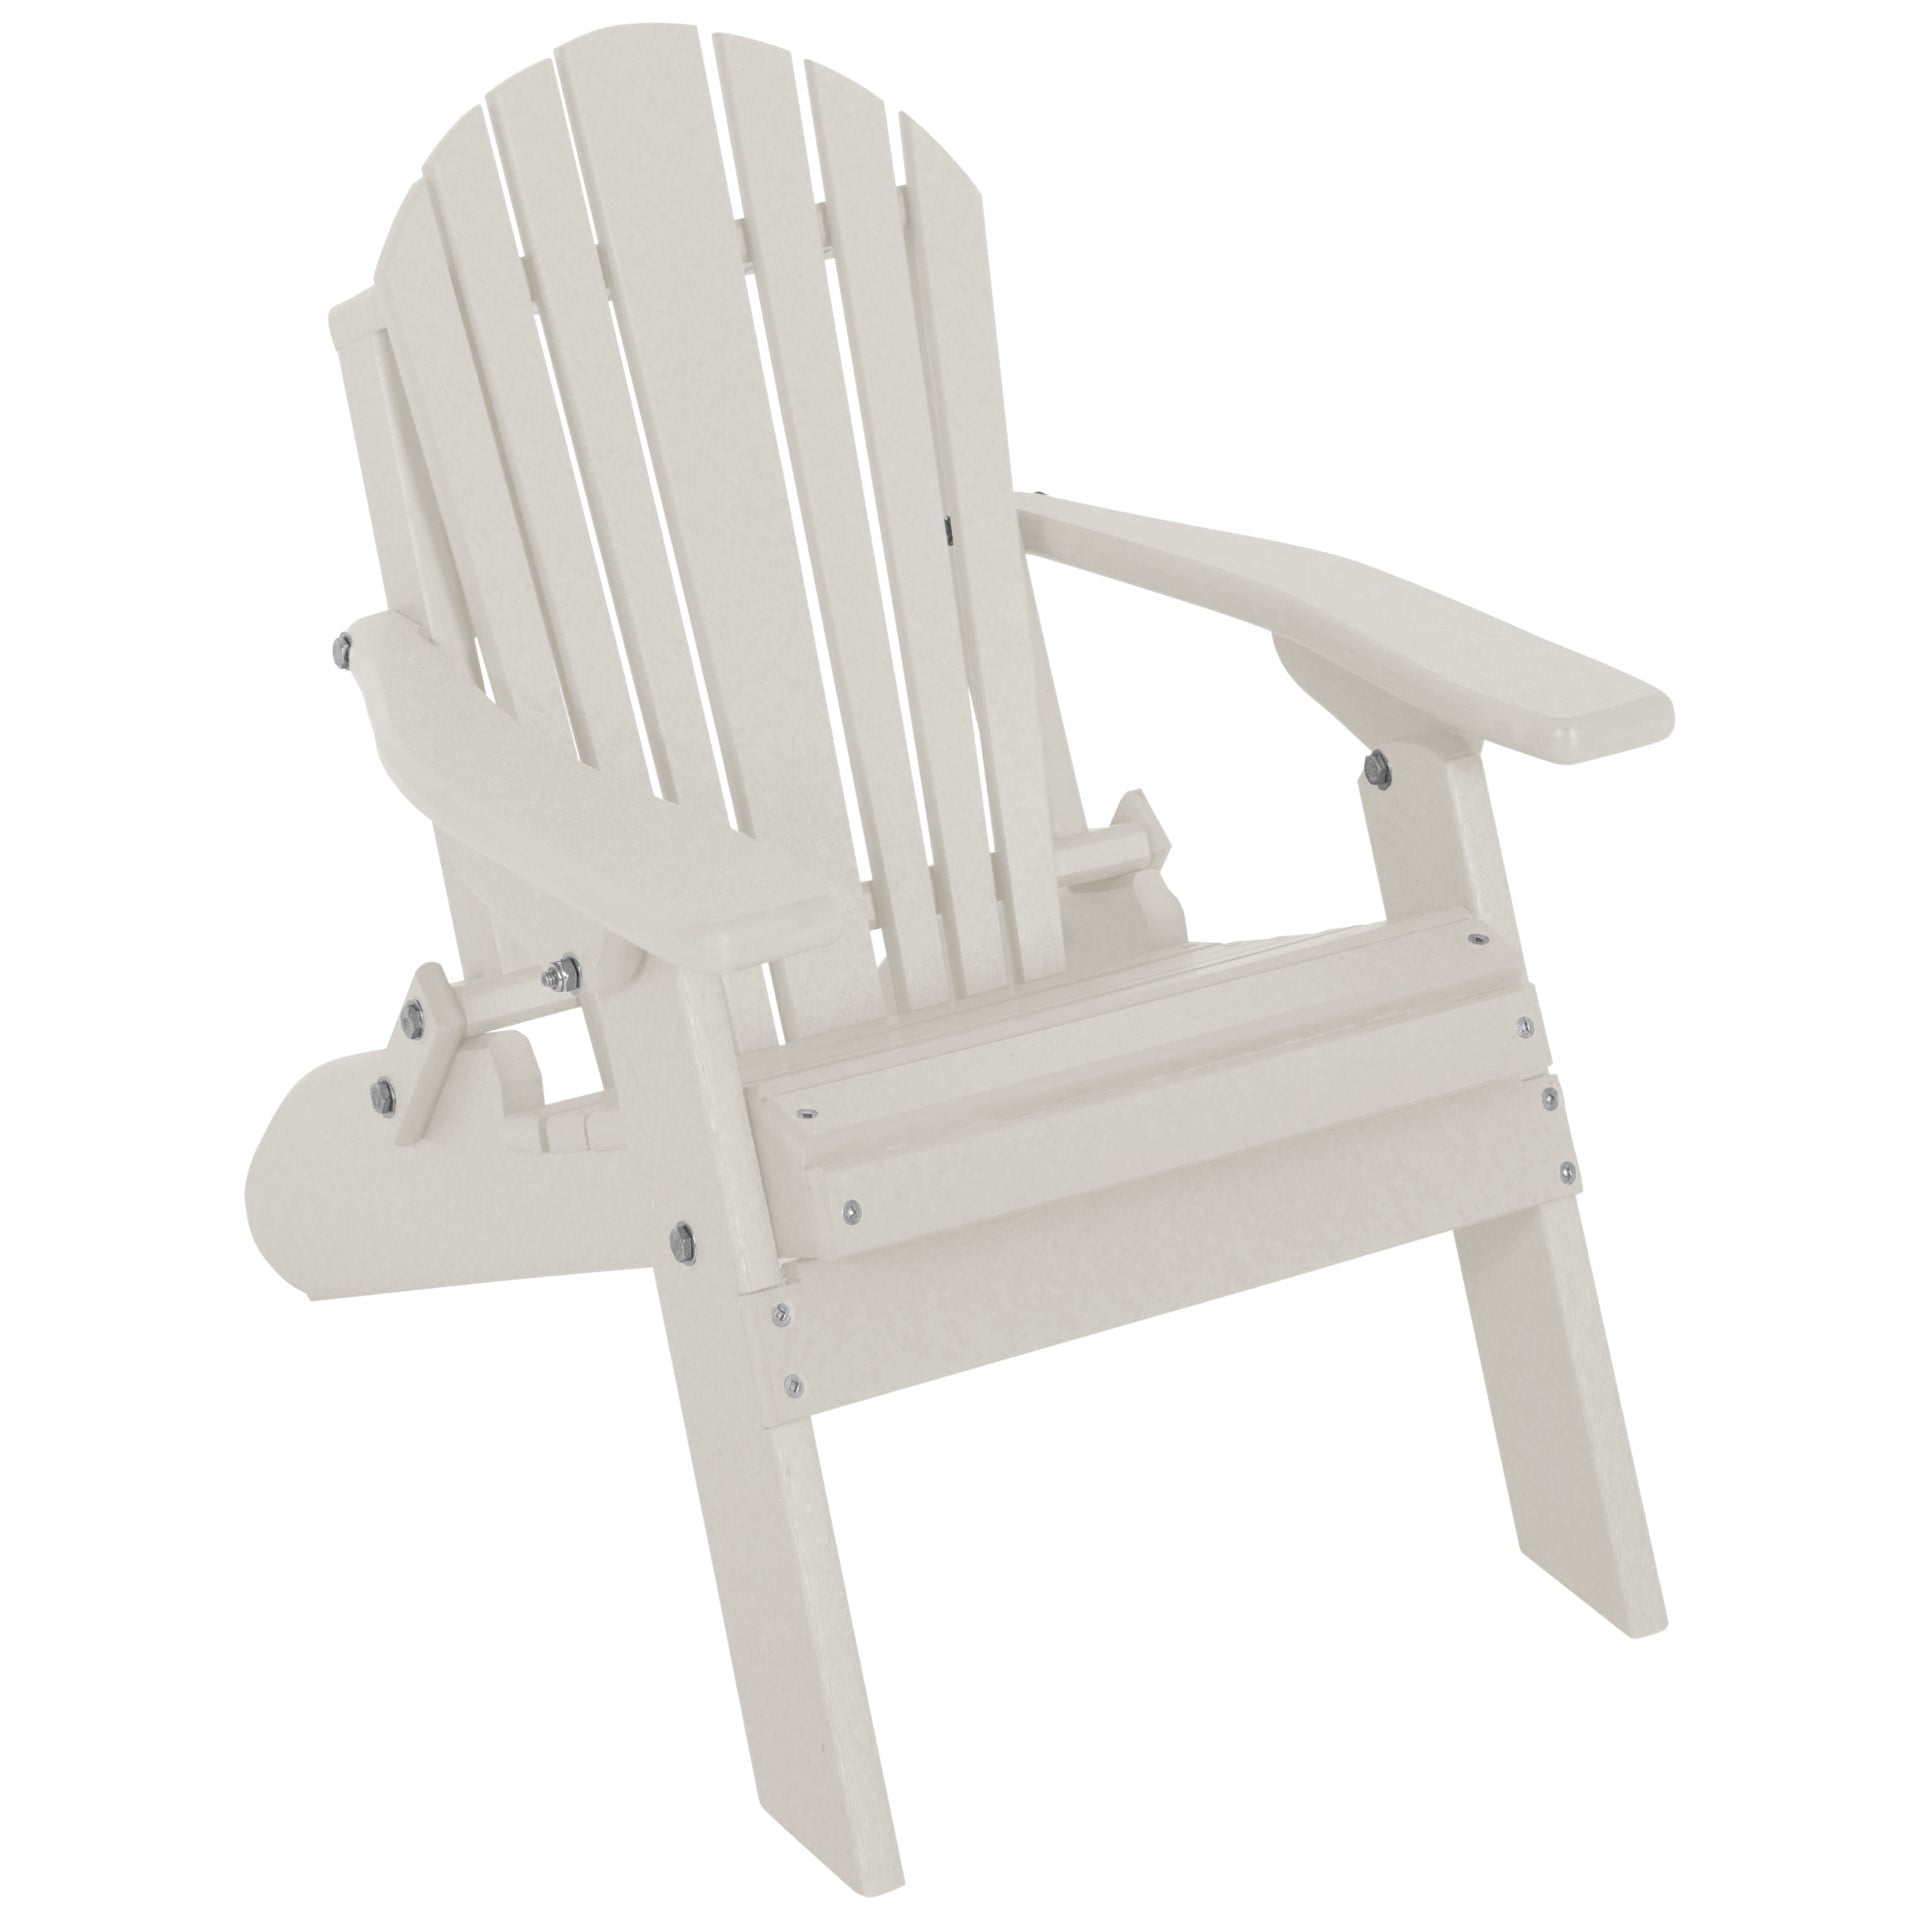 Toddler Size Poly Lumber Folding Adirondack Chair